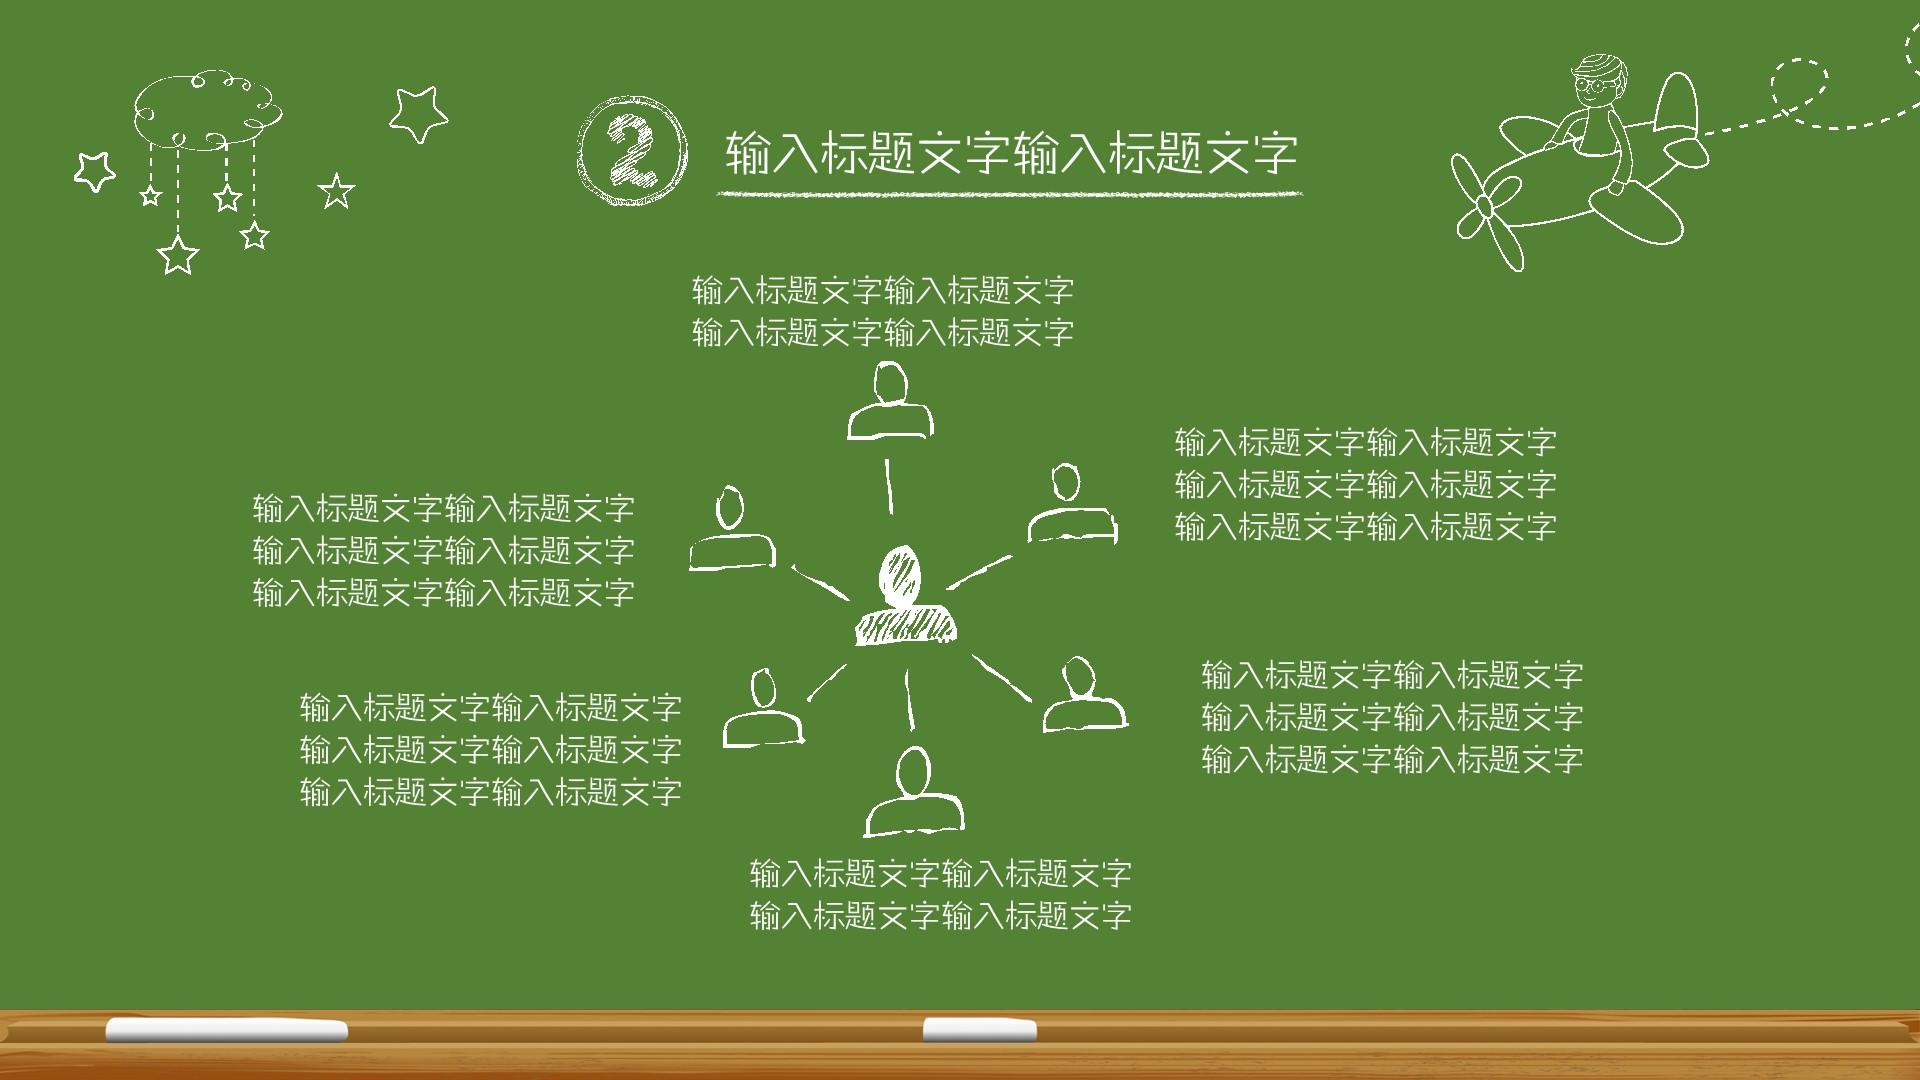 教育教学绿色橙色卡通简洁云素材PPT模板1672669745021